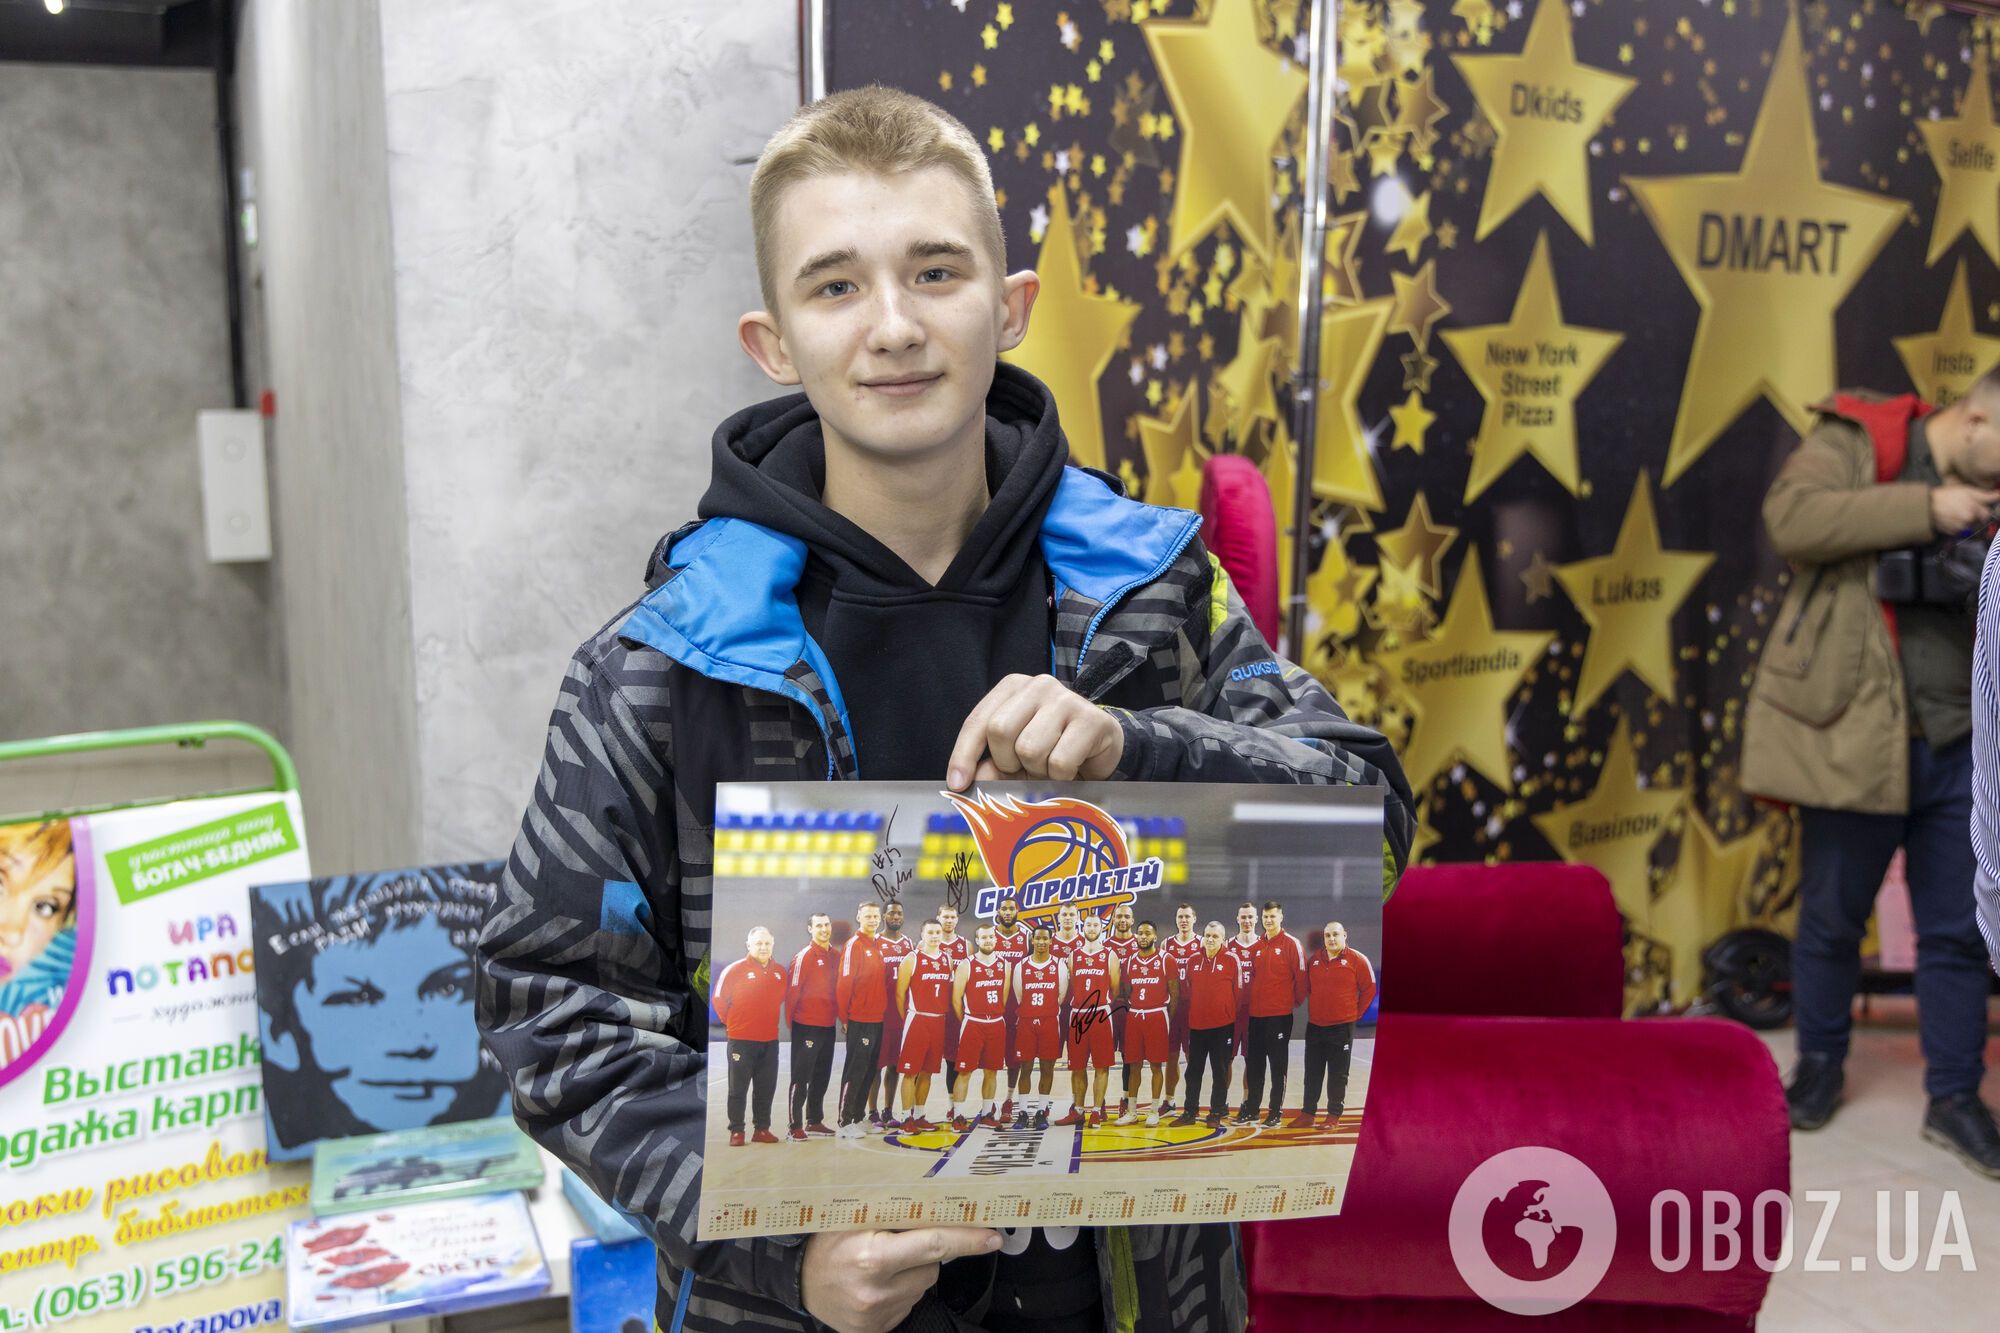 Звездные баскетболисты СК "Прометей" делились автографами с болельщиками